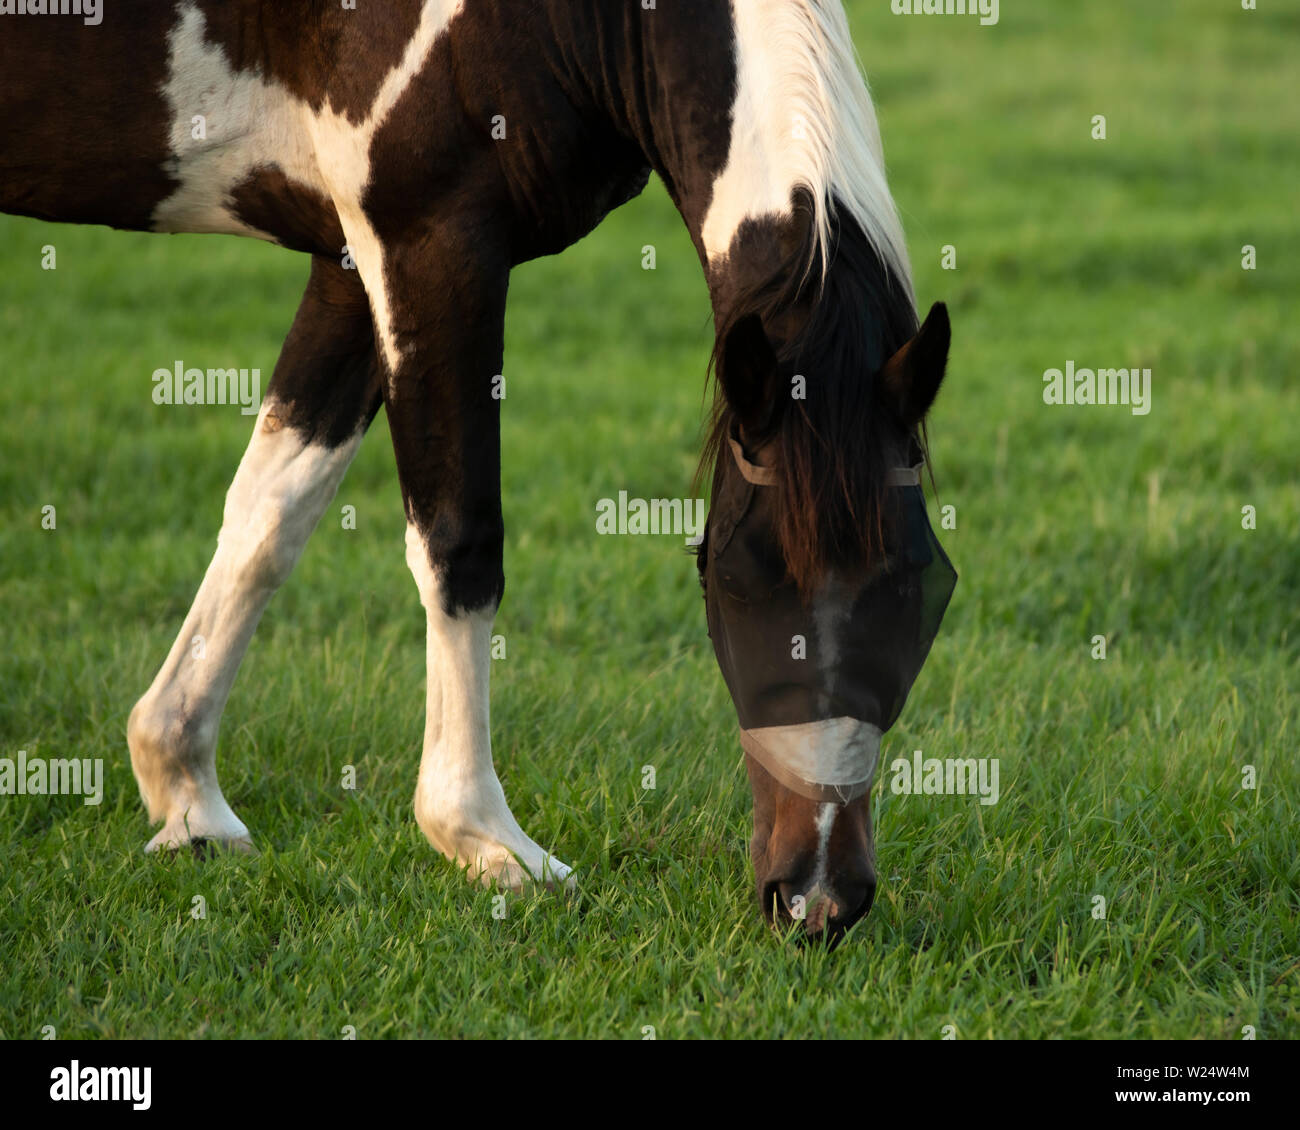 Peindre Pinto Horse mange de l'herbe. Il porte un masque noir. Il est brun et blanc. Banque D'Images